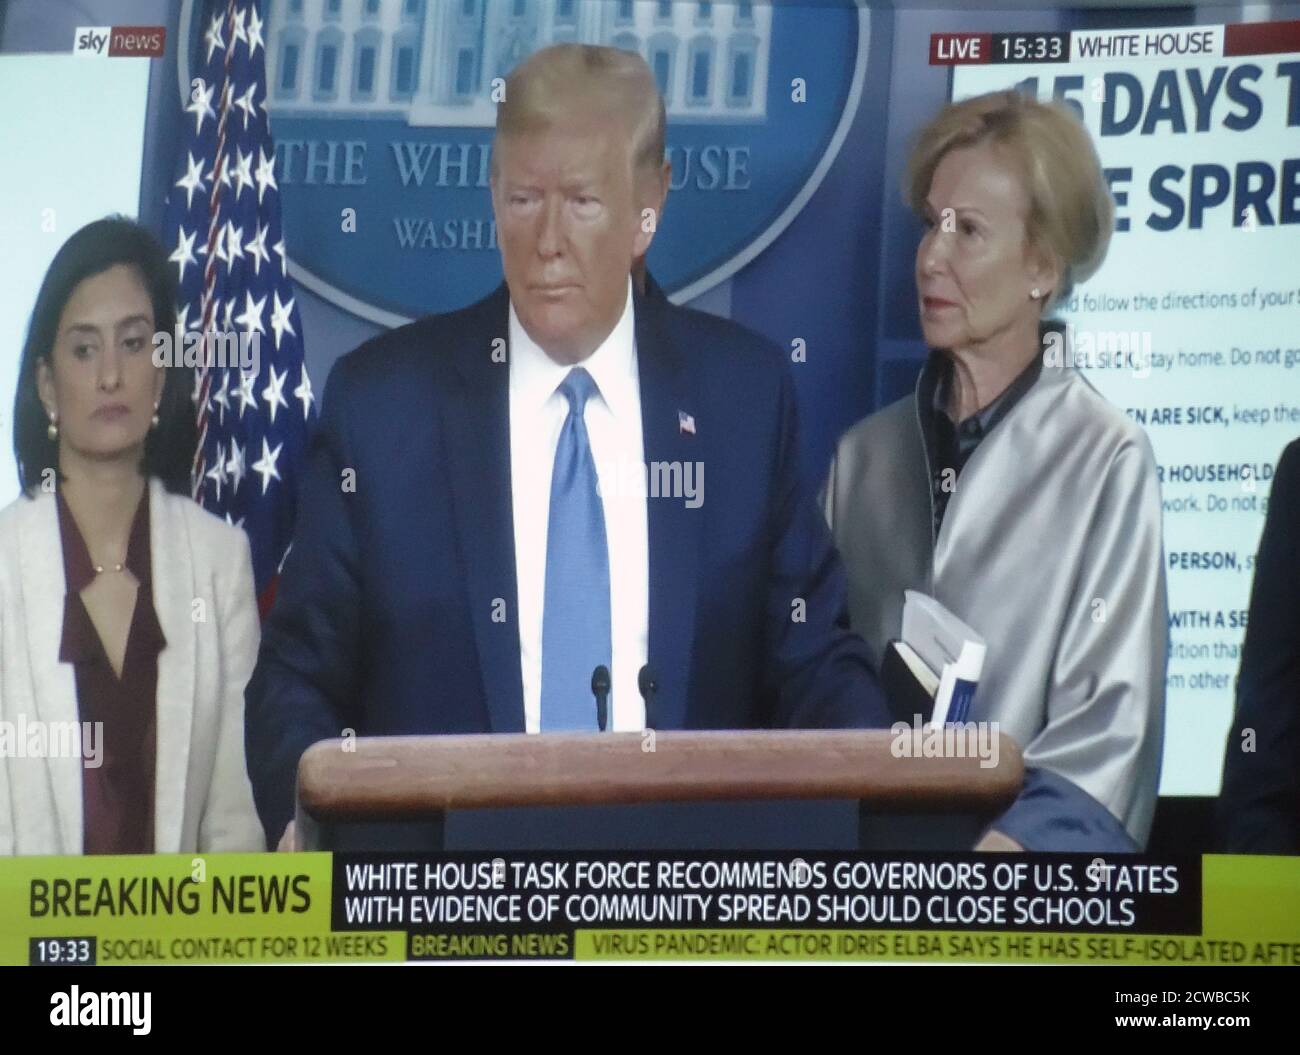 Le président Donald Trump, conférence de presse, pendant la pandémie du virus Corona. Mars 2020 Banque D'Images